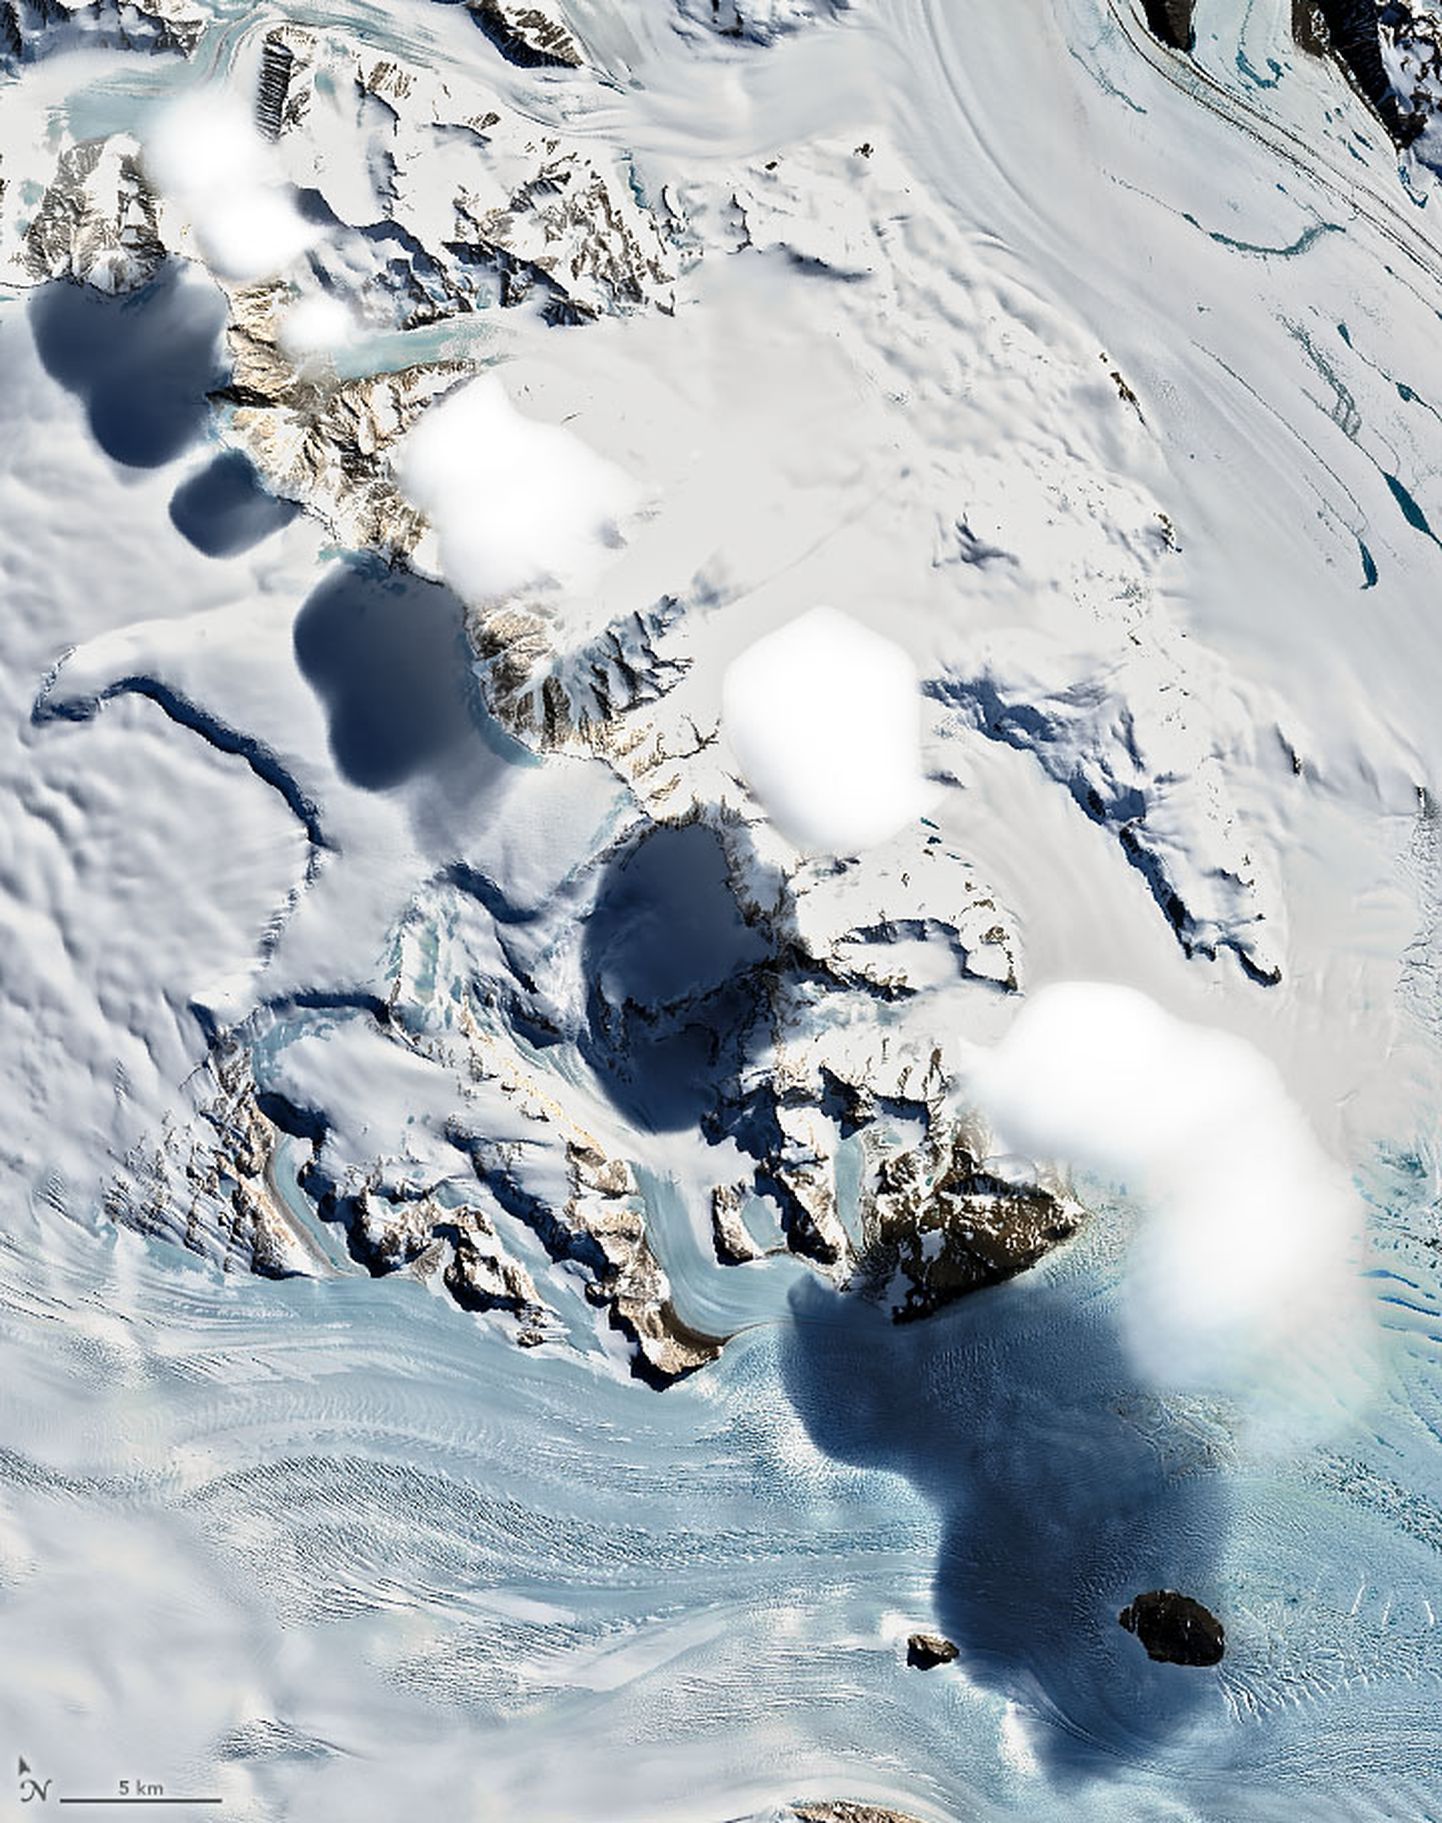 Satelliidi Landsat 8 tehtud foto kummalistest pilvedest Antarktika Transantarktika mäestiku kohal